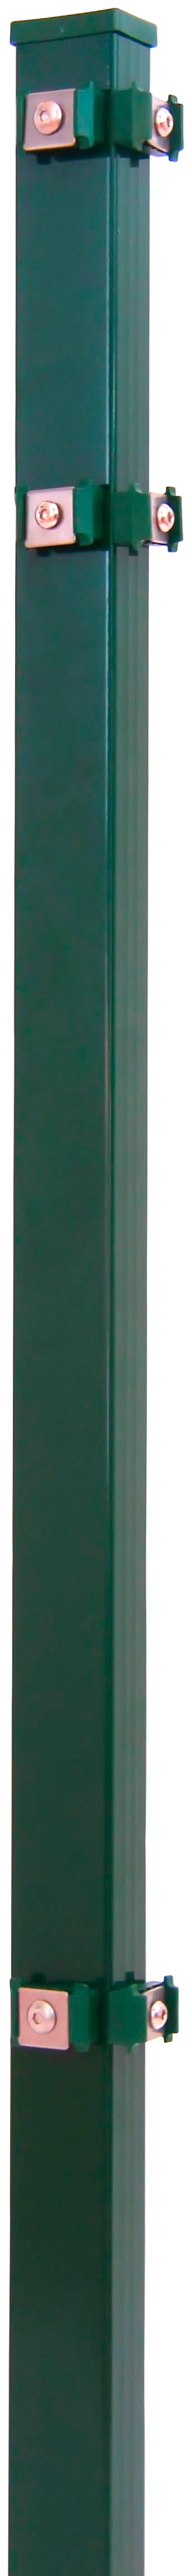 PEDDY SHIELD Eckpfosten 4x4x120 cm, für Ein- und Doppelstabmatten